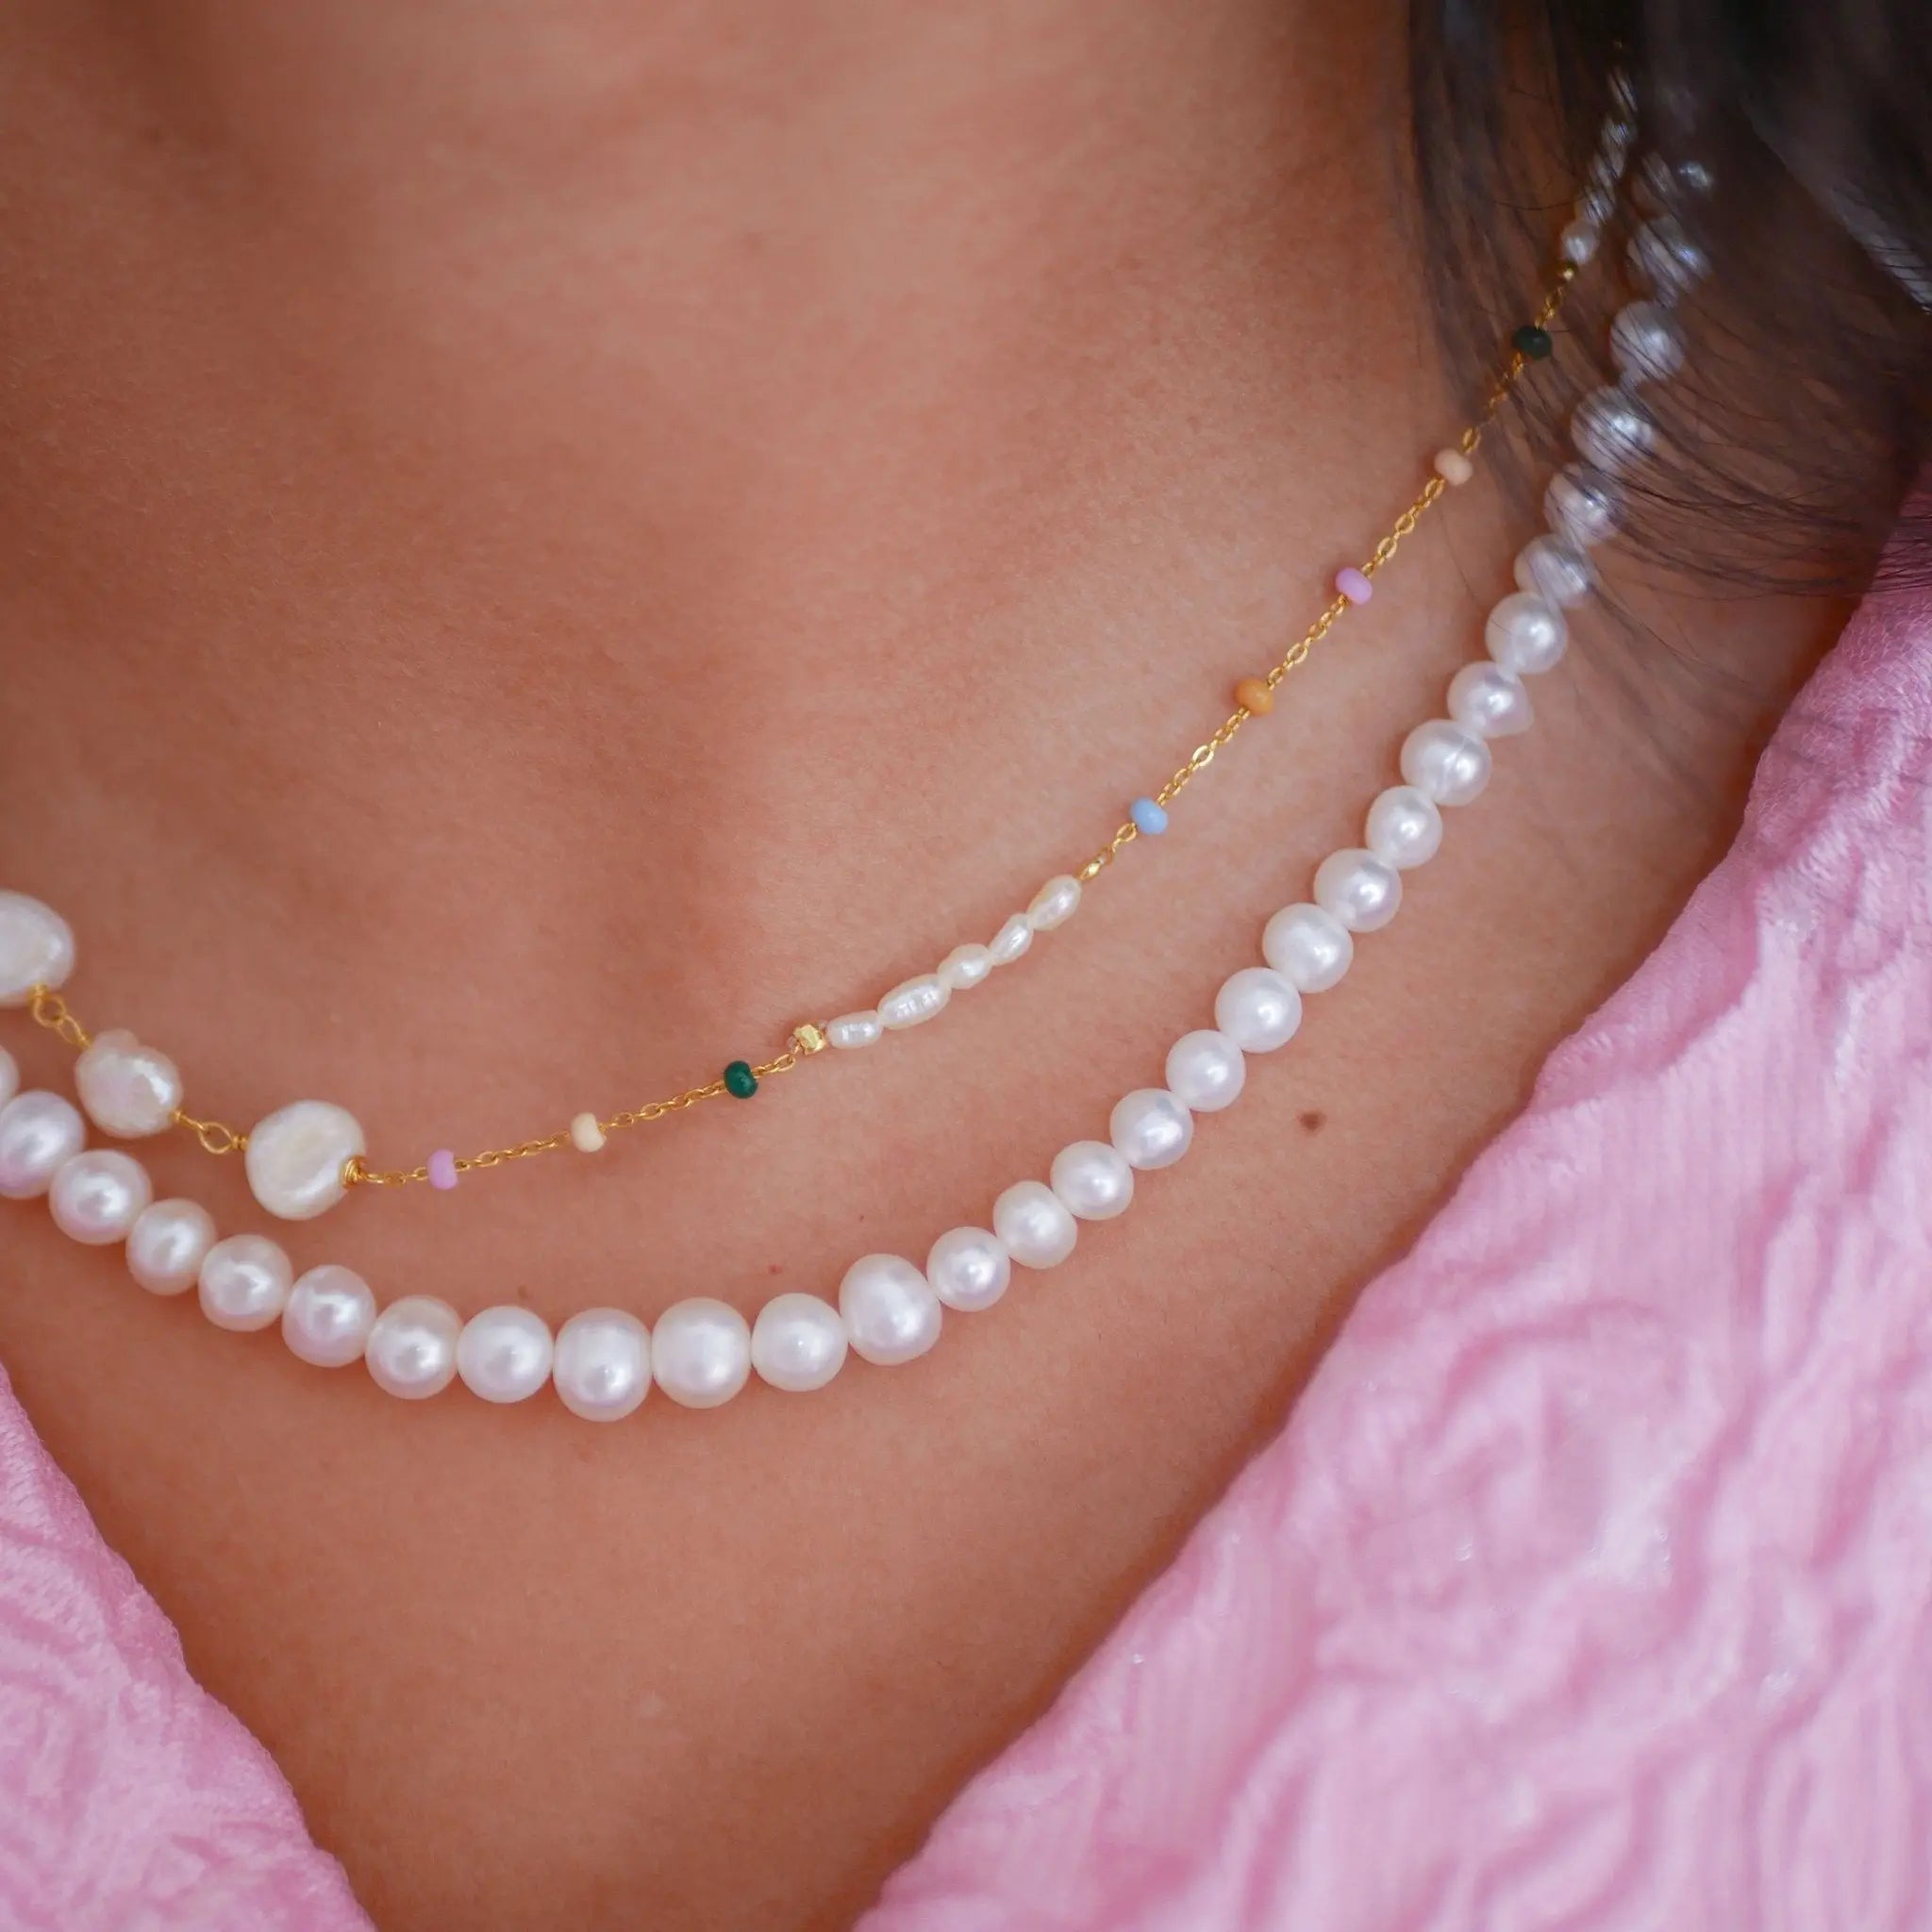 Pearlie halskæde - Forgyldt fra Enamel